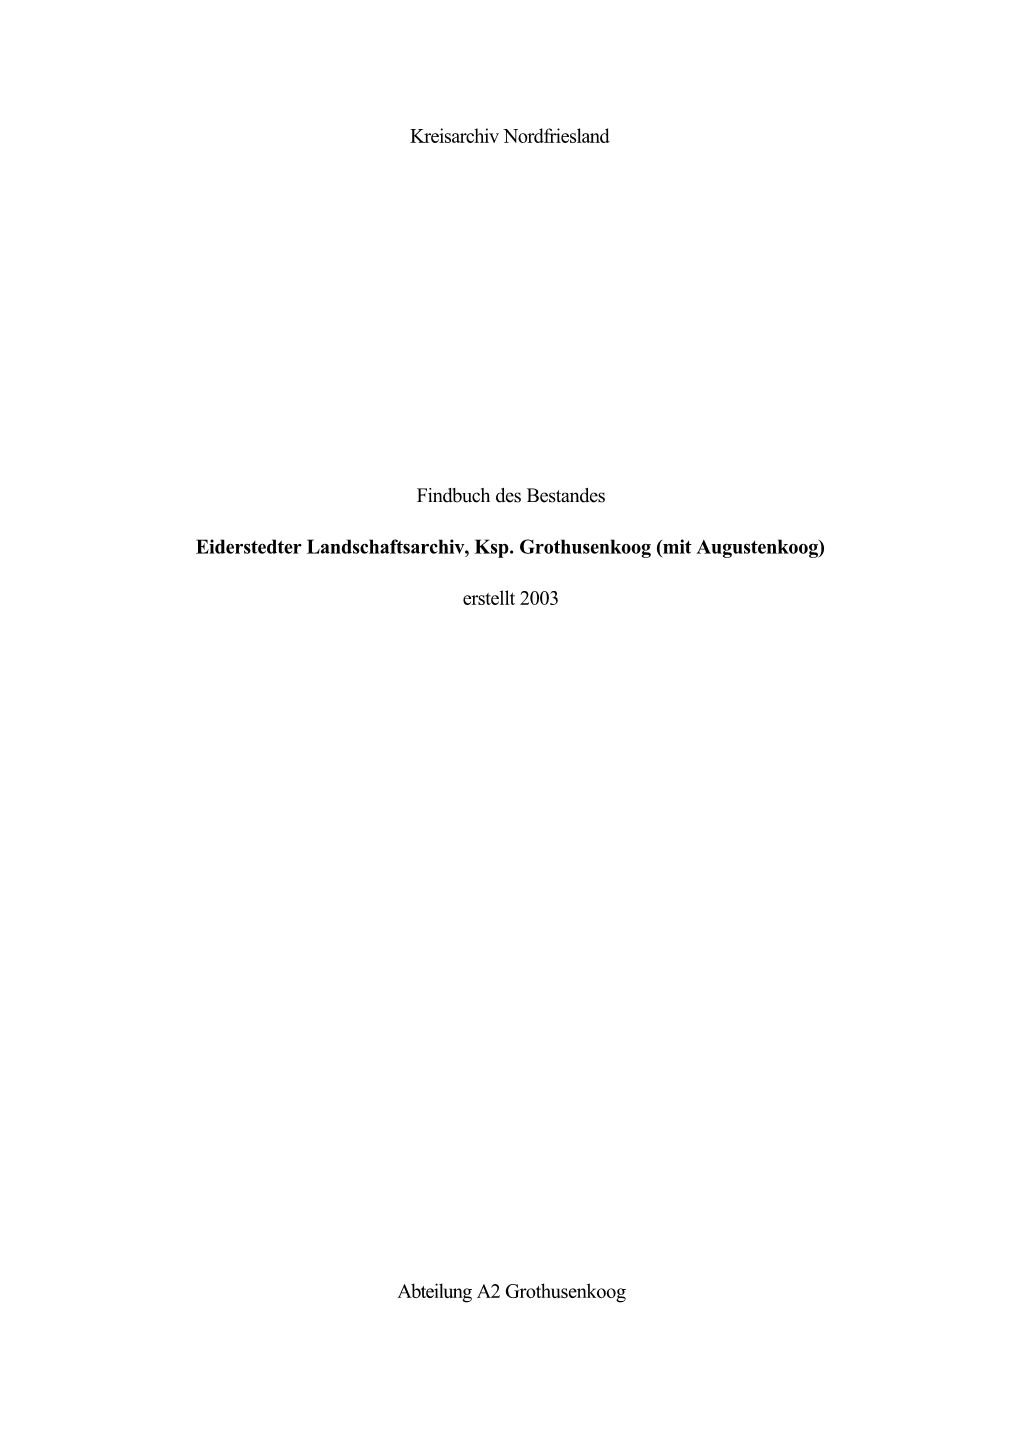 Kreisarchiv Nordfriesland Findbuch Des Bestandes Eiderstedter Landschaftsarchiv, Ksp. Grothusenkoog (Mit Augustenkoog) Erstellt